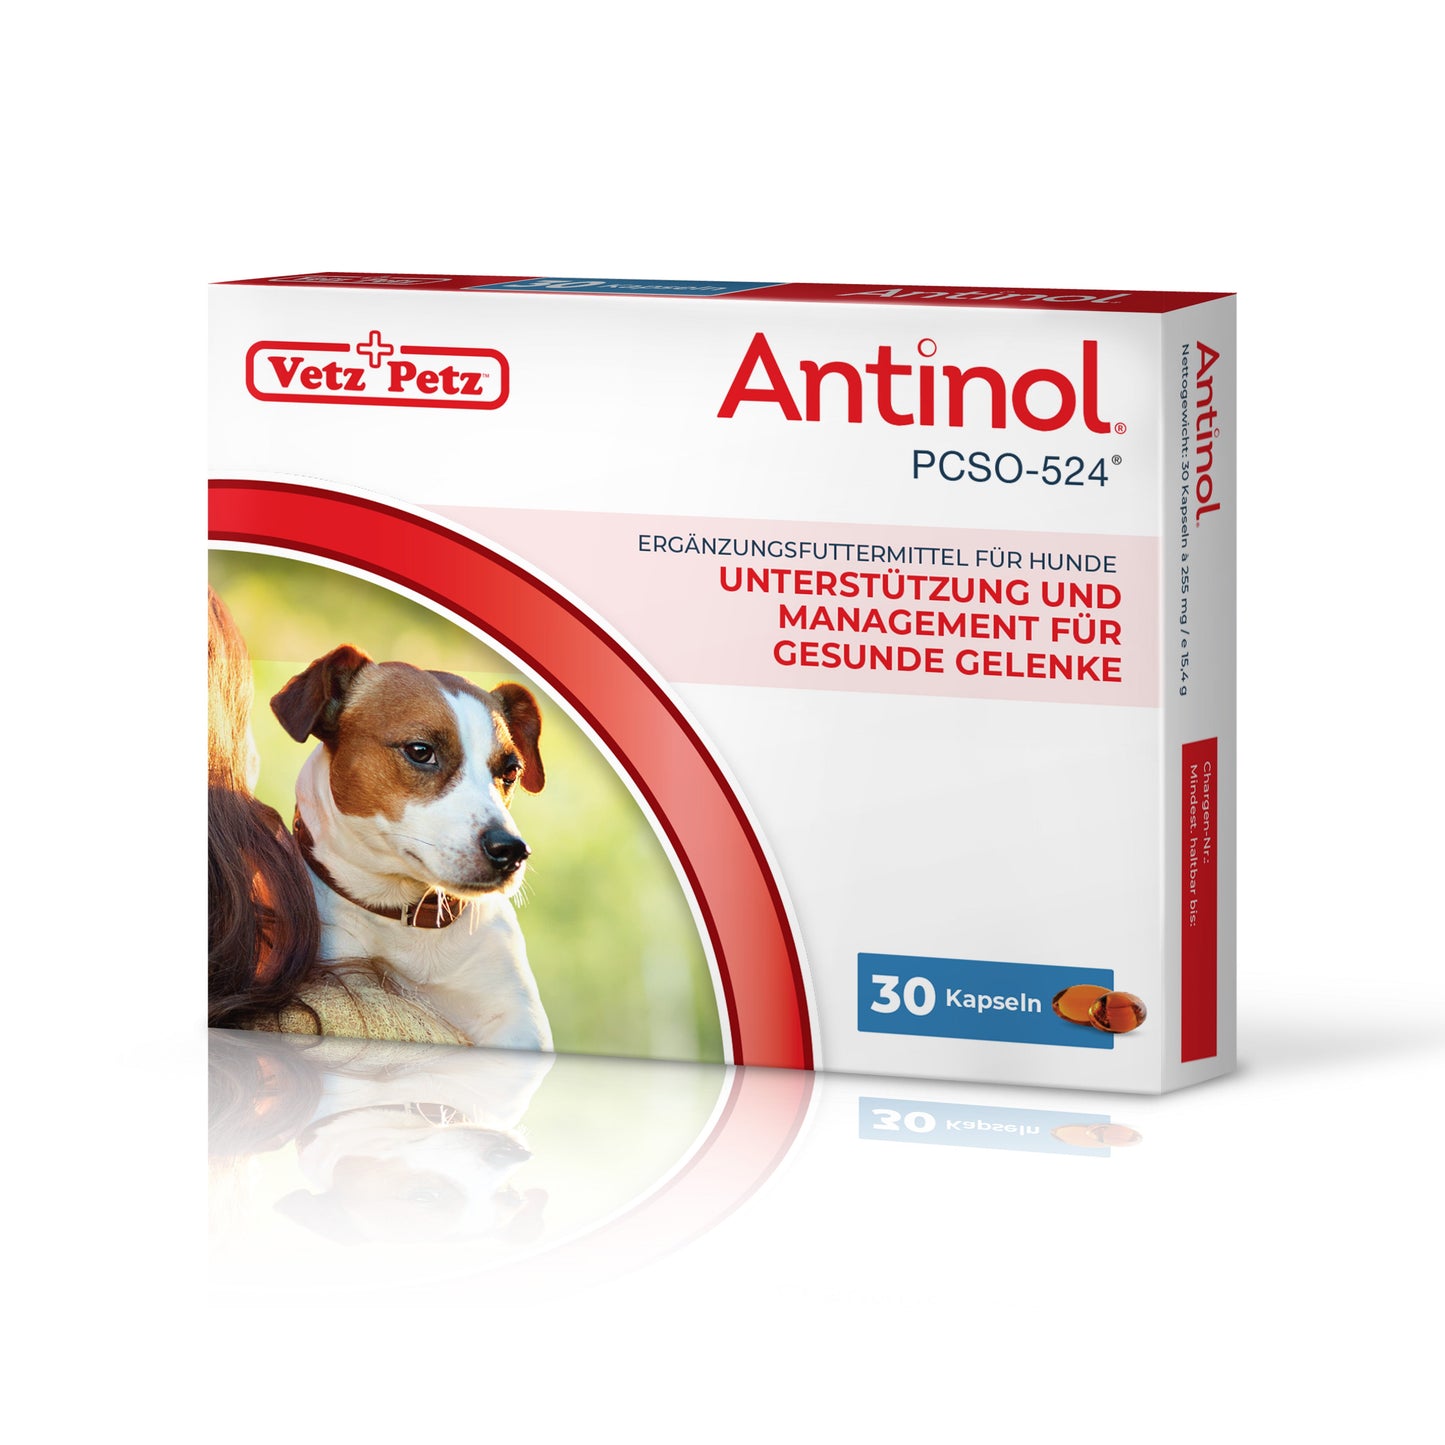 Antinol<sup>®</sup>️ für Hunde - Abonnieren und 10 % sparen